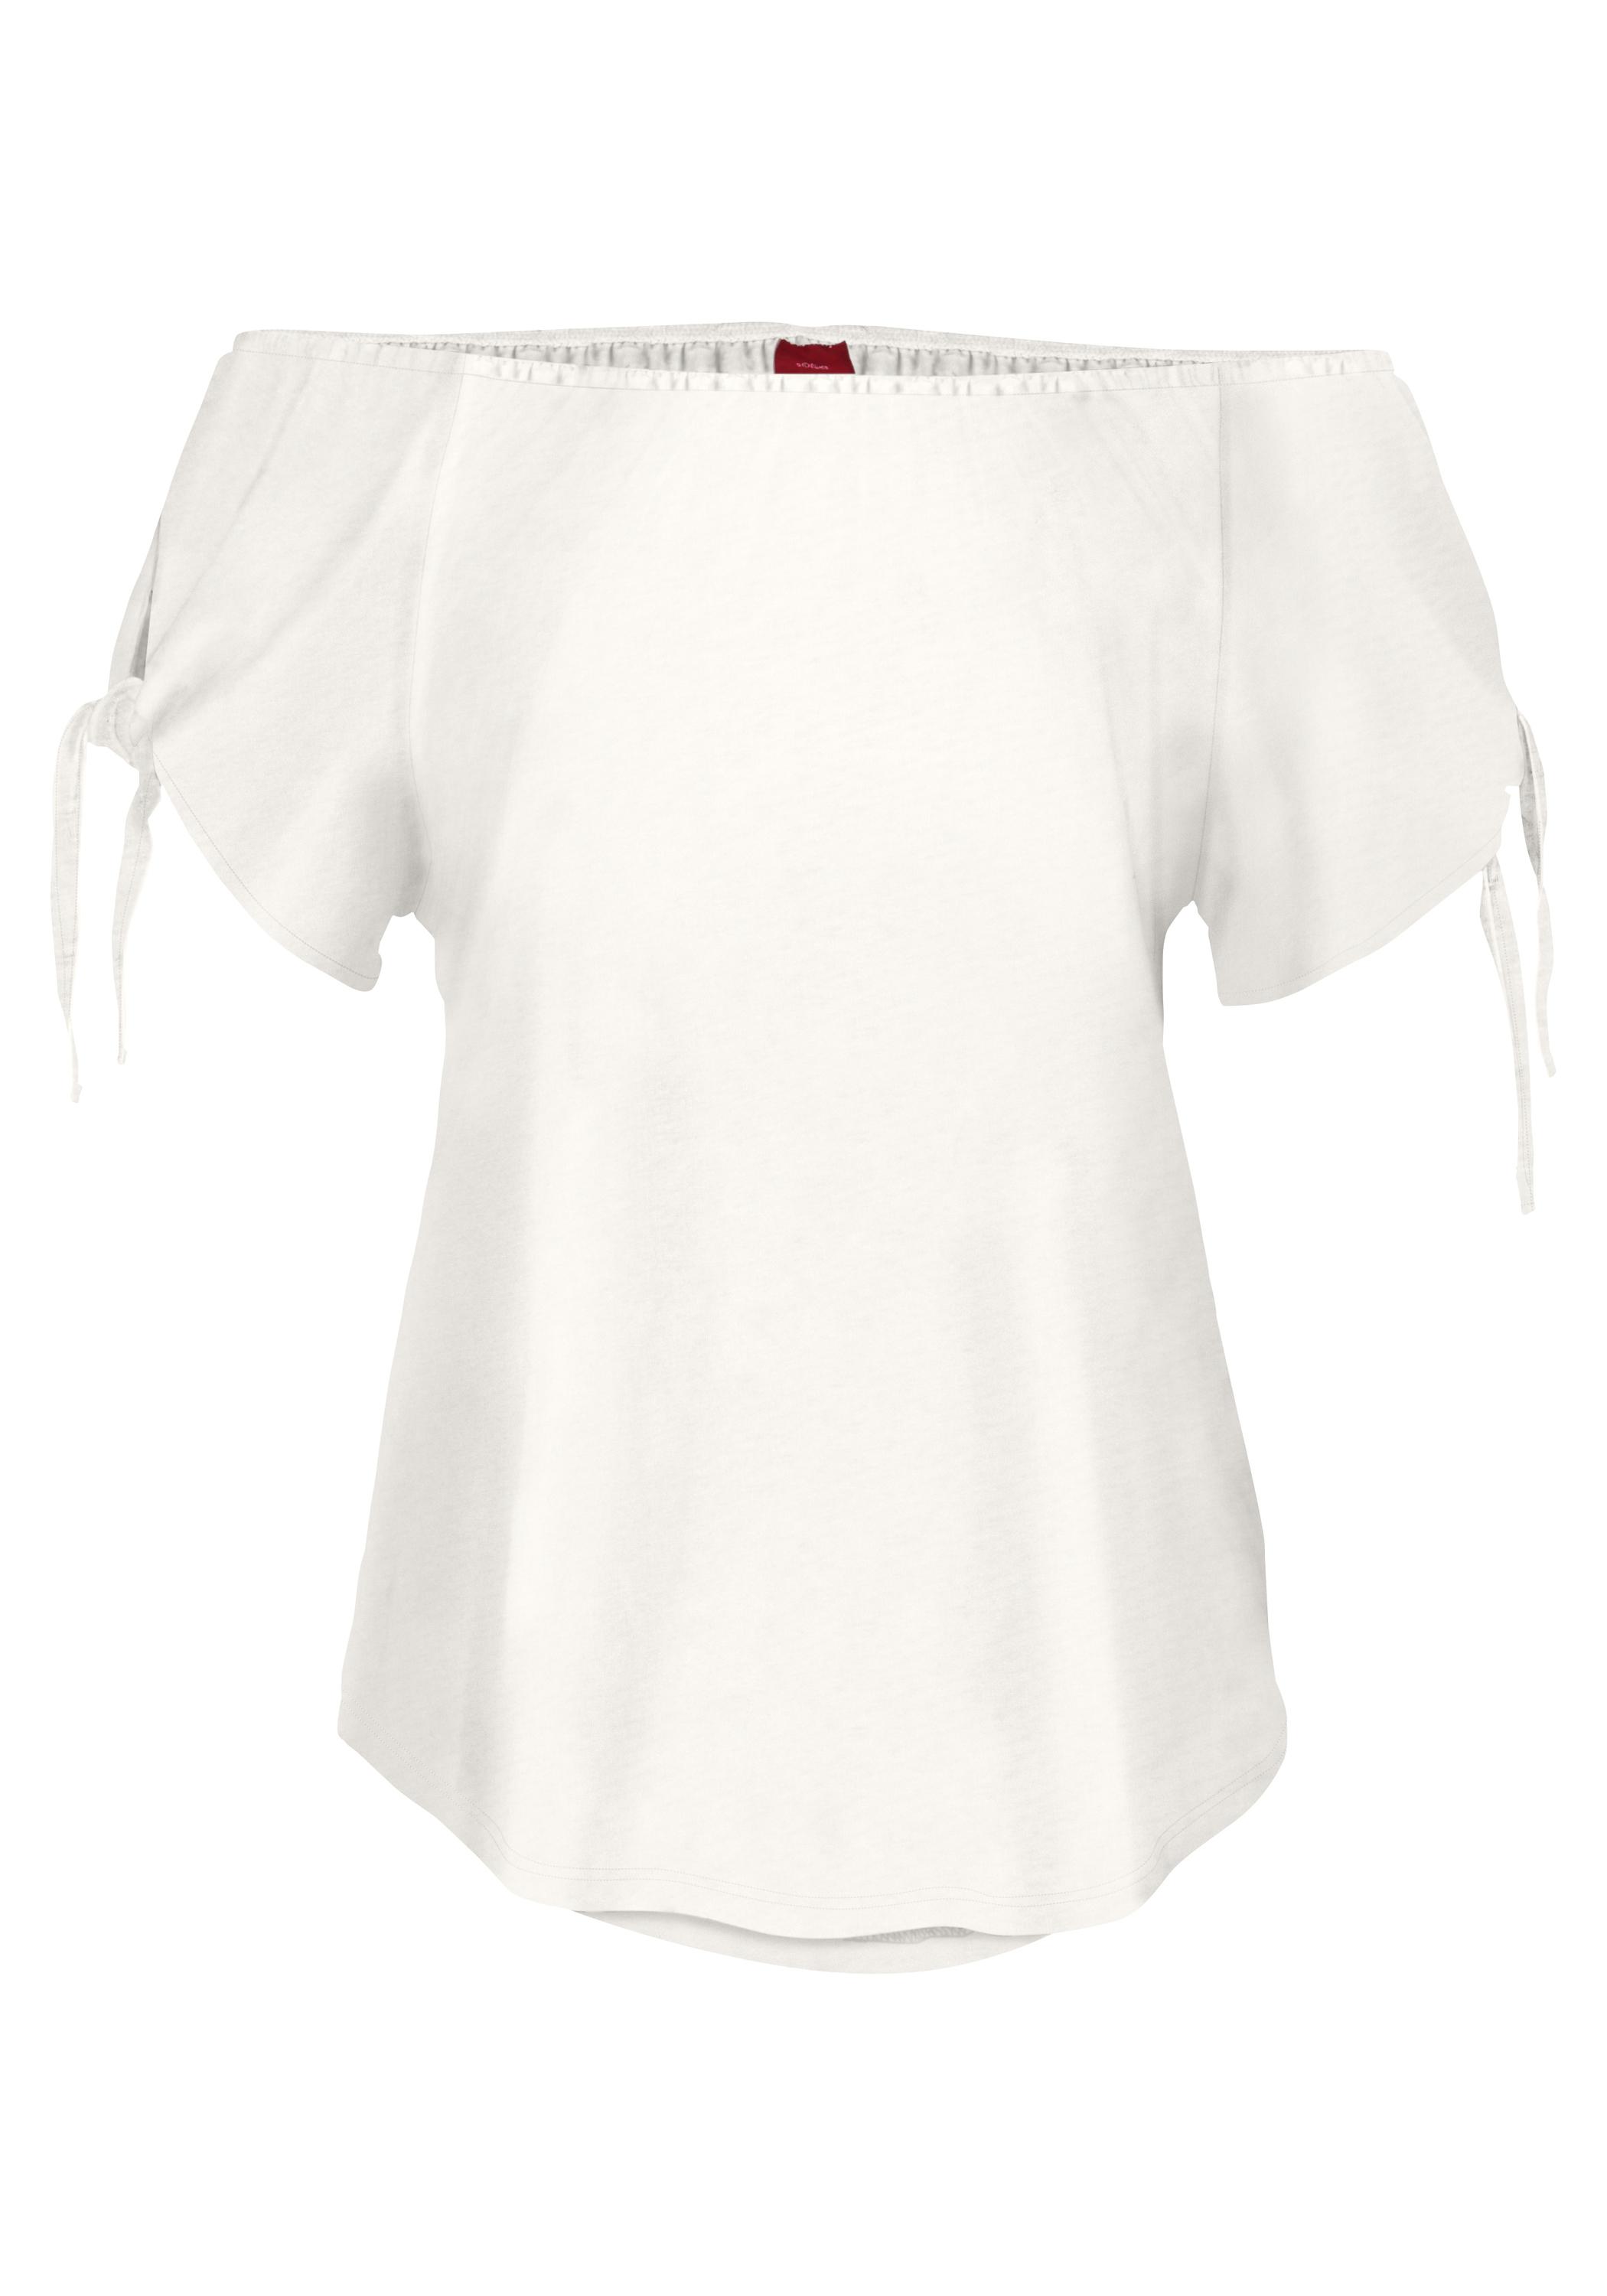 S.OLIVER T-Shirt Damen weiß Shop kaufen SportScheck Online von im